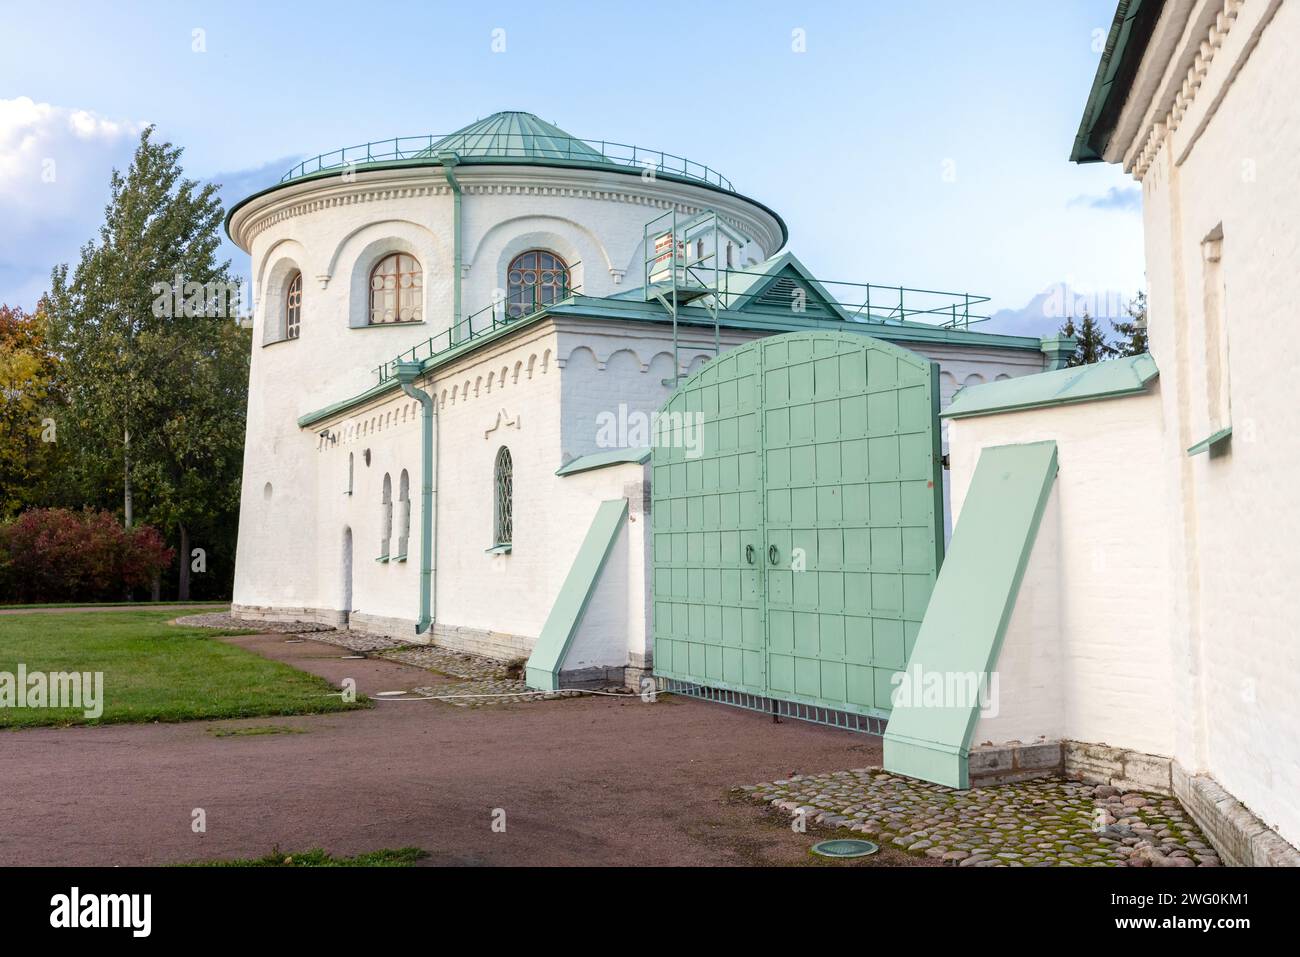 Extérieur de Ratnaya Palata, Tsarskoye Selo, Russie. Le bâtiment a été érigé en 1913 pour ressembler à un vieux fort russe et contenir un musée de m russe Banque D'Images